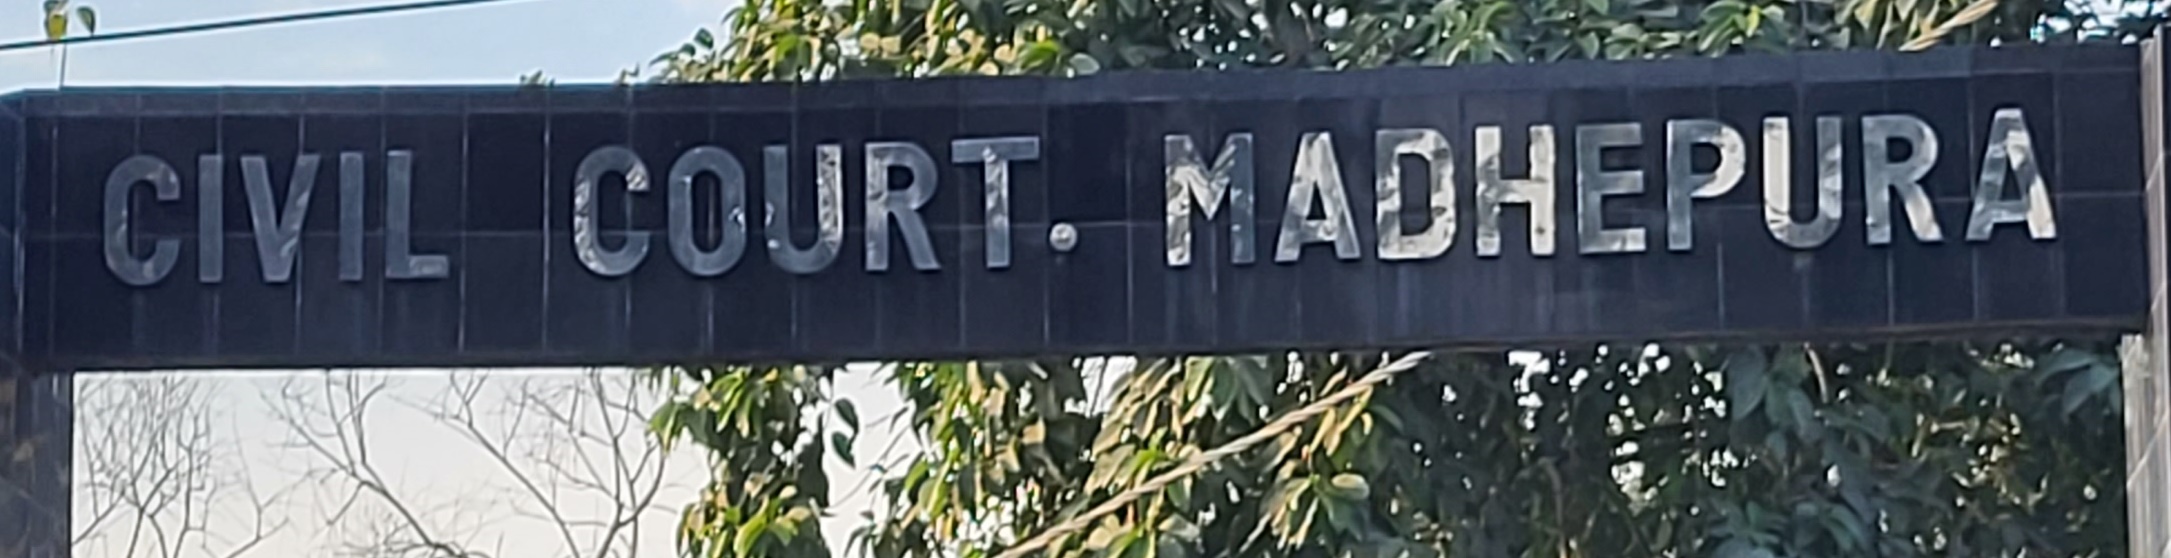 Civil Court Madhepura